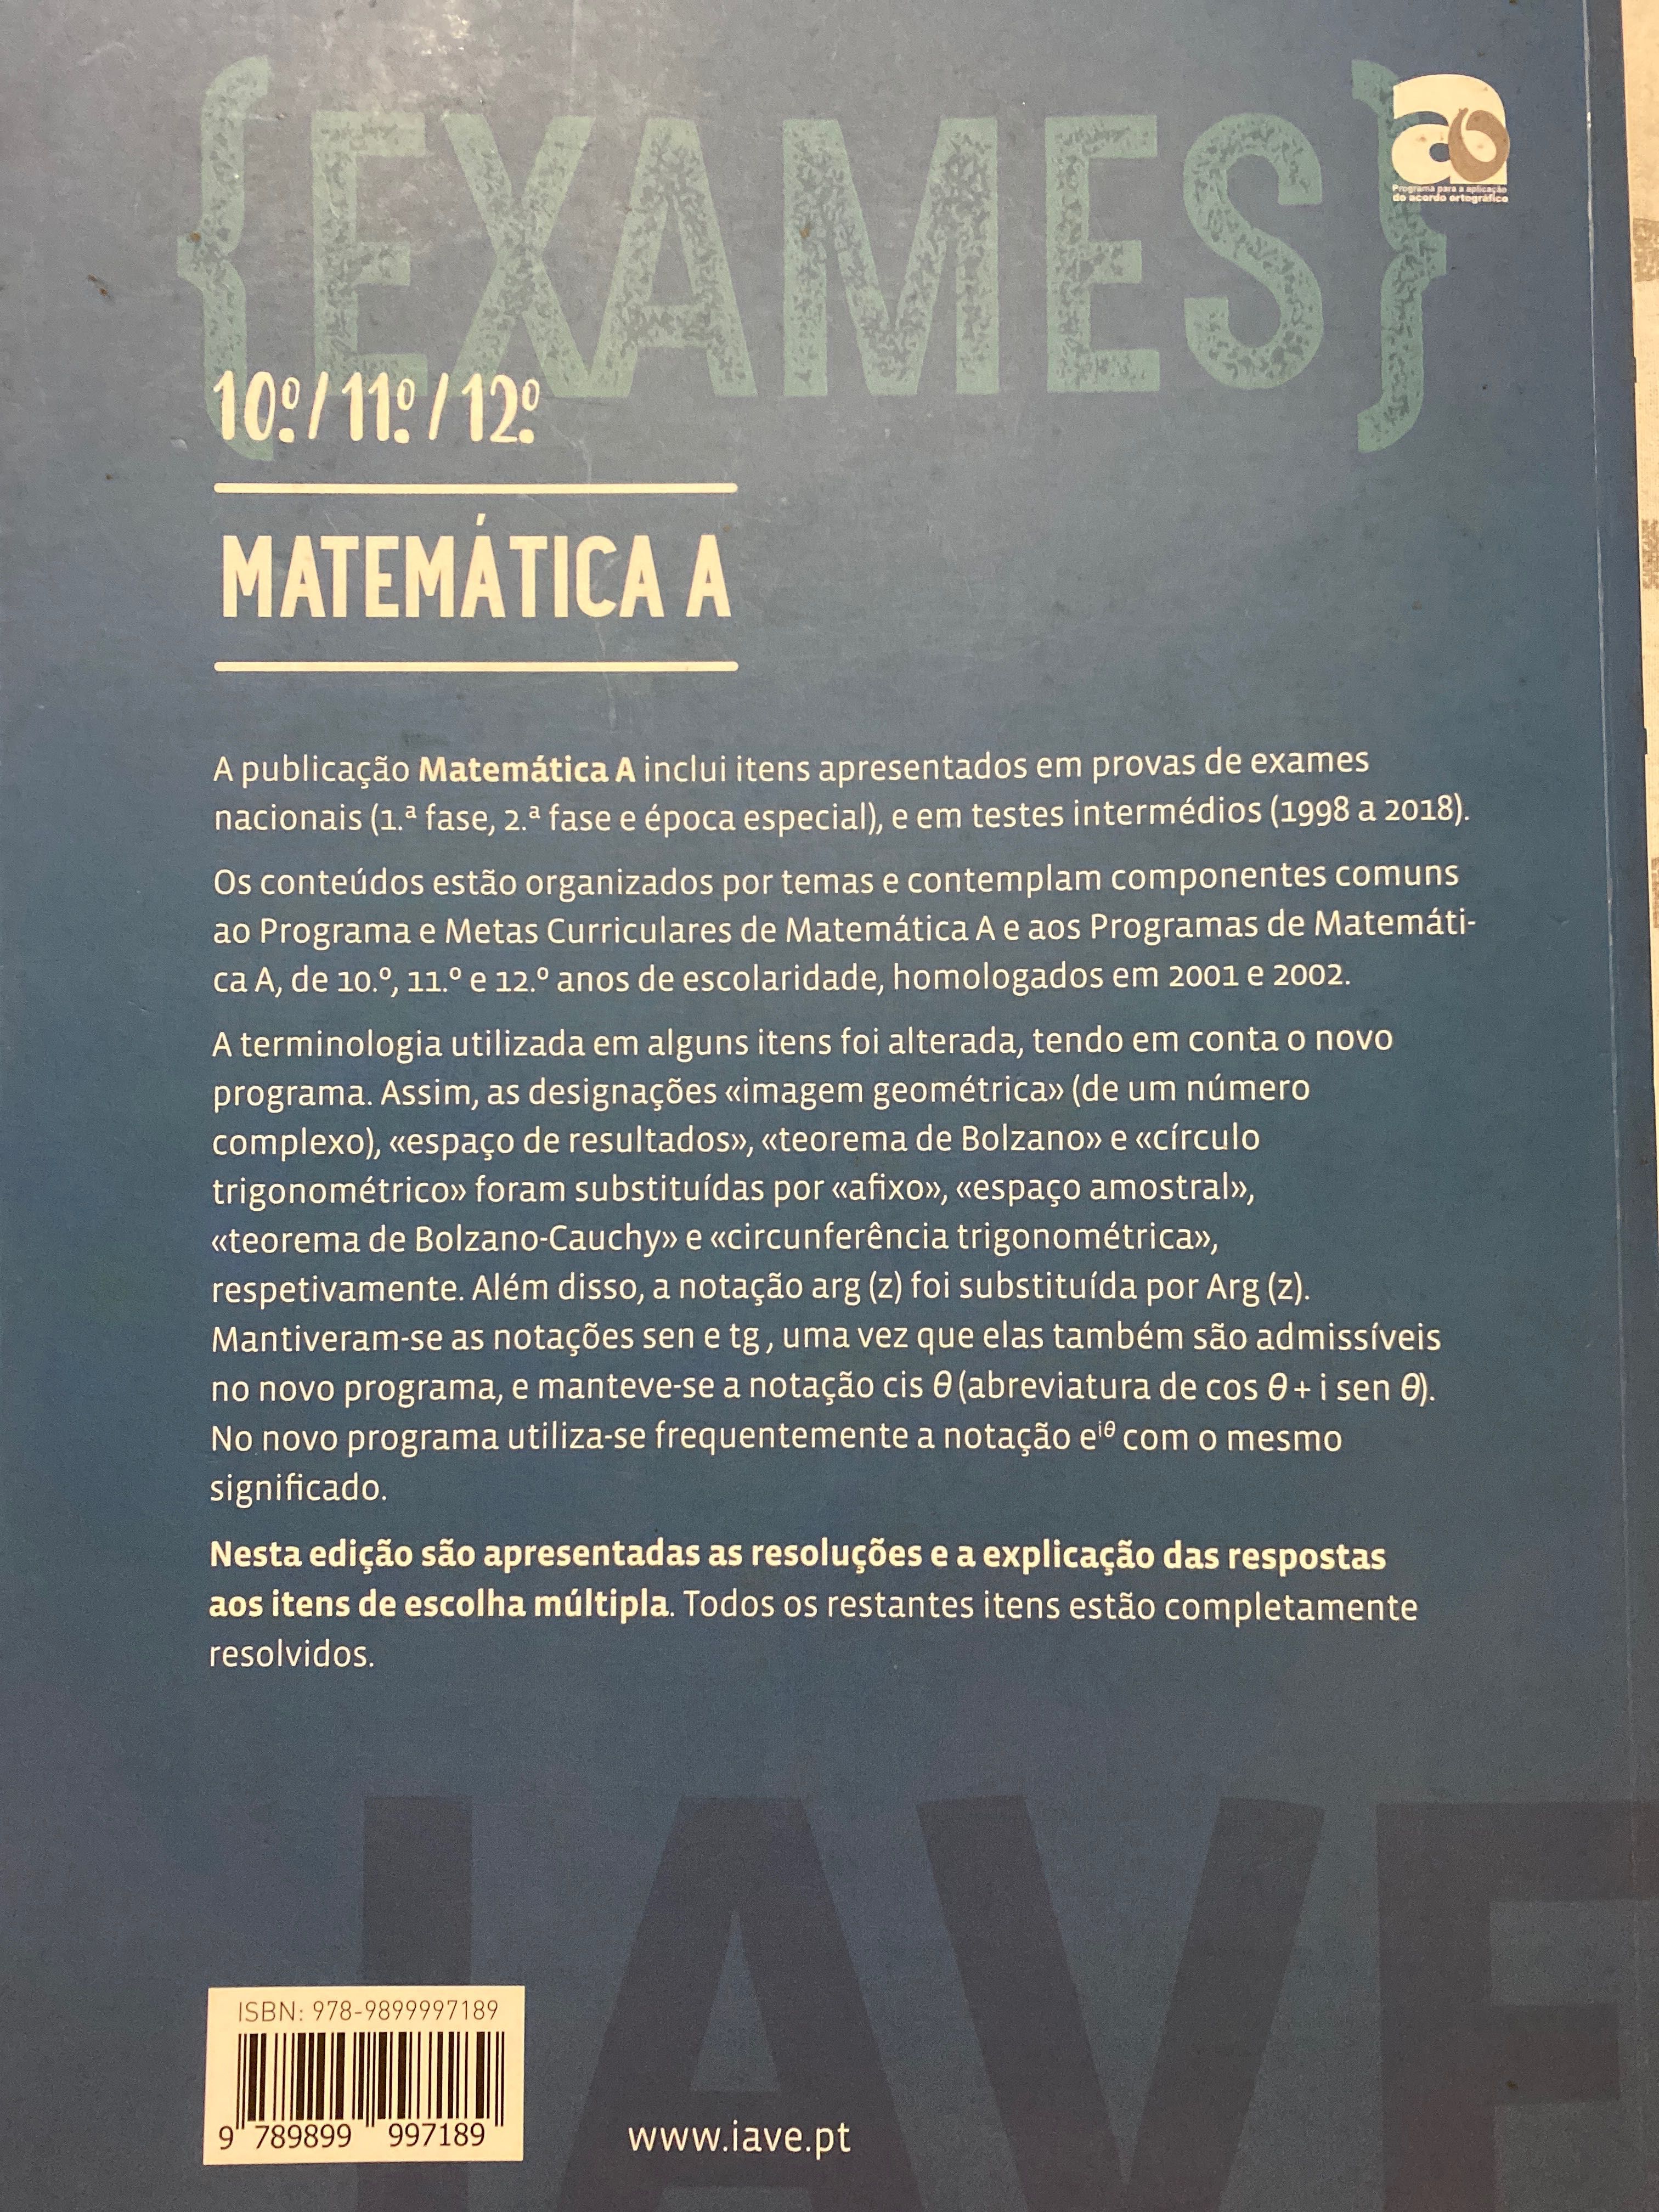 Livro IAVE preparação exame matemática